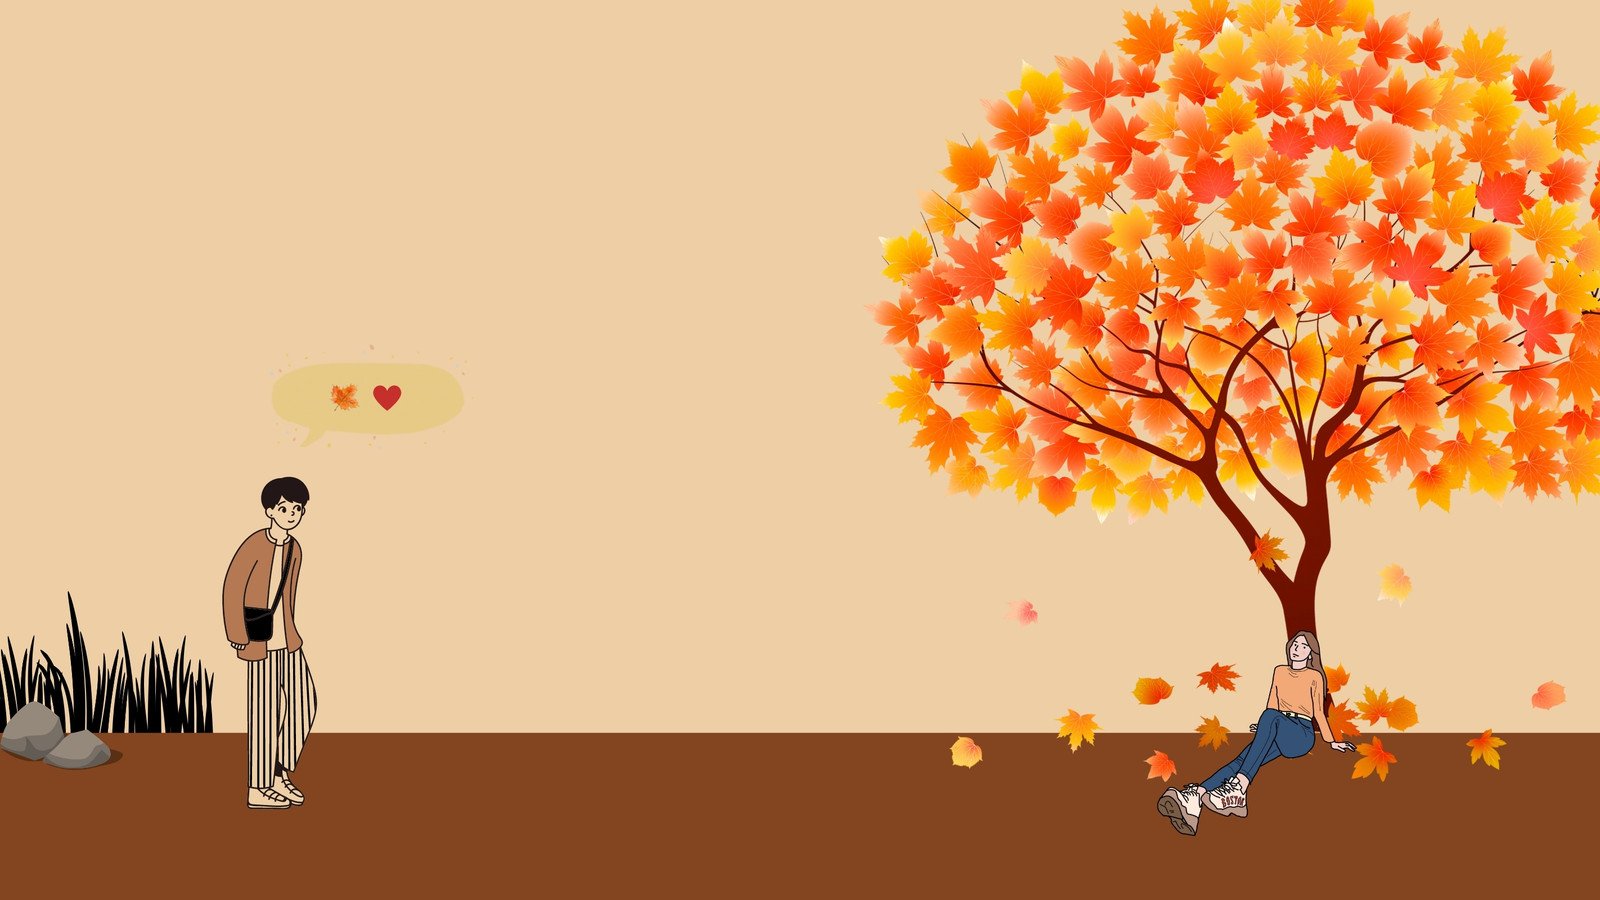 Thiết kế mẫu hình nền mùa thu tùy chỉnh miễn phí trên Canva mang đến cho bạn những trải nghiệm tuyệt vời về mùa thu. Lựa chọn các hình ảnh đẹp mắt, chỉnh sửa dễ dàng và tạo ra một bức tranh hoàn hảo cho màn hình của bạn. Hãy cùng khám phá nhé!